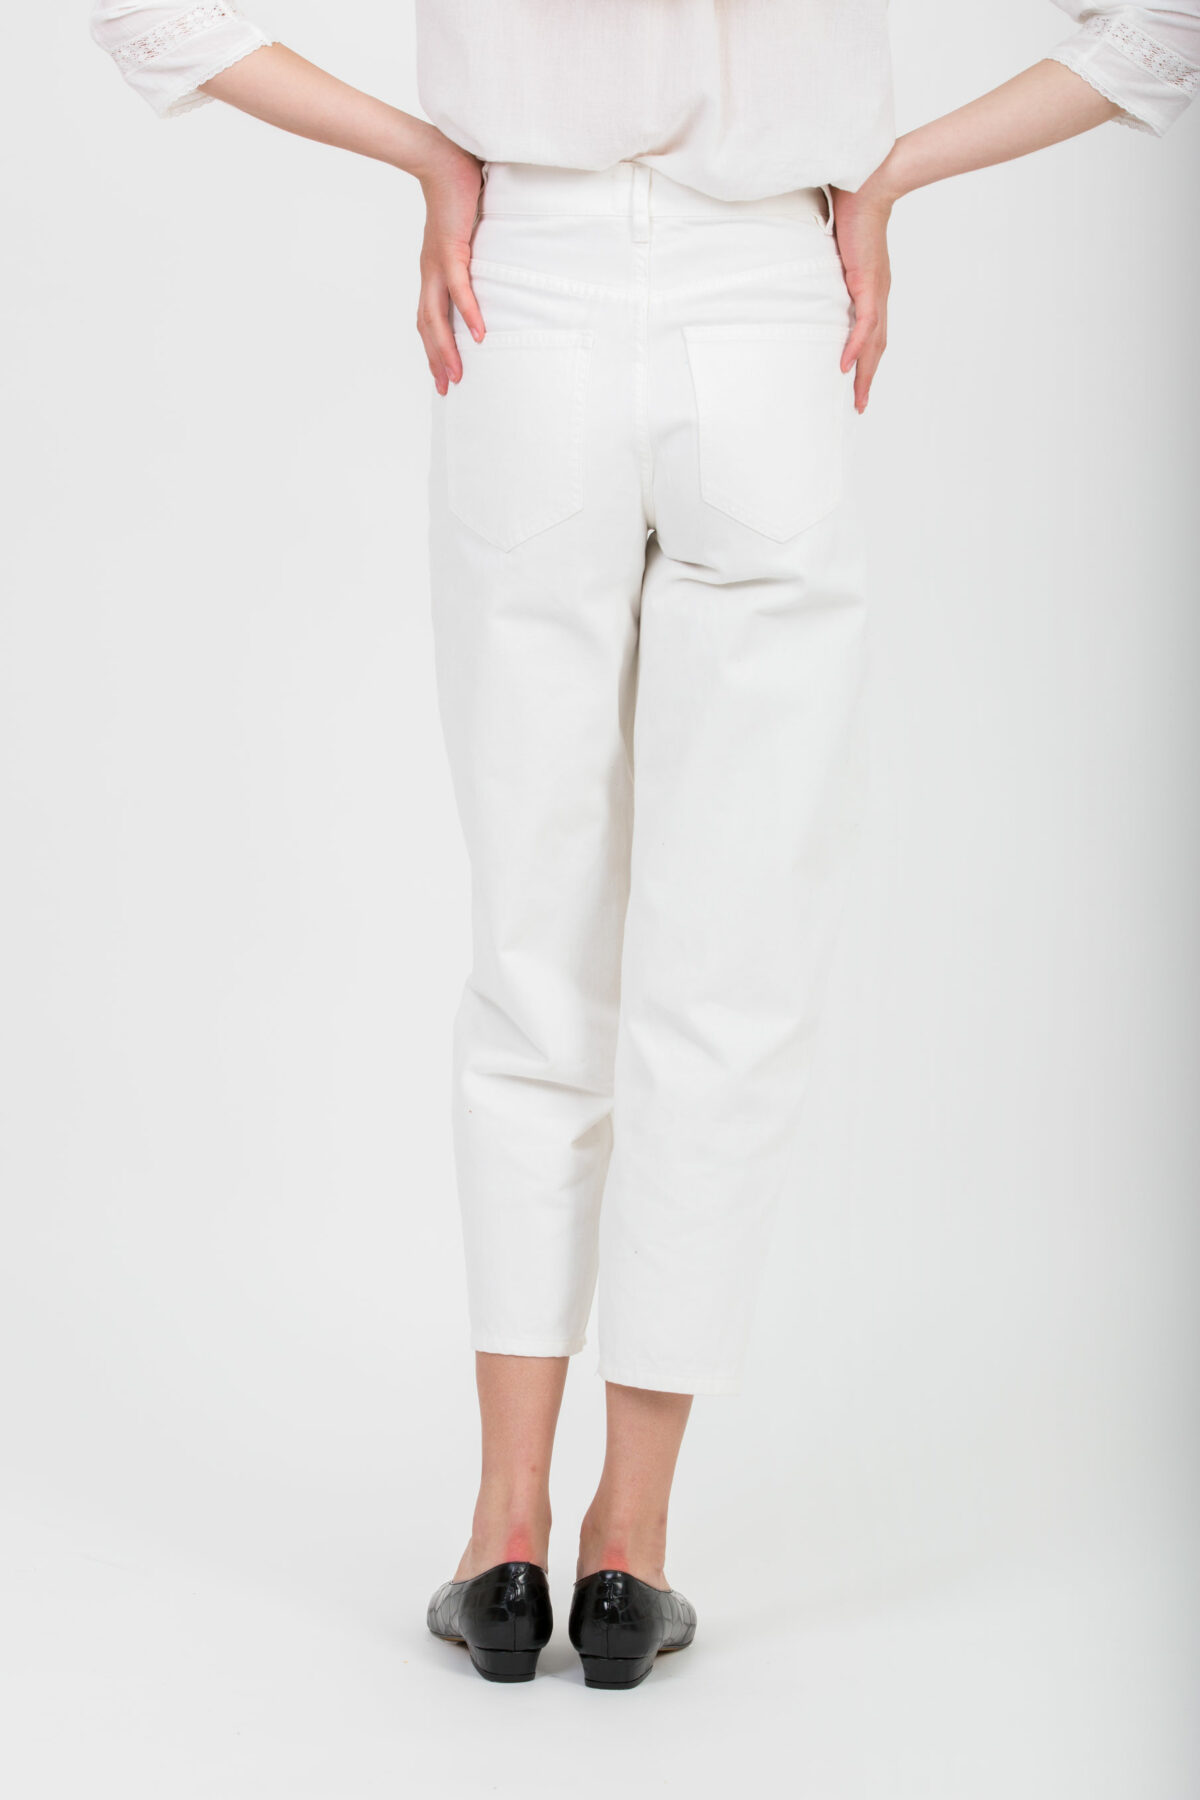 jemma-white-jeans-curve-labdip-matchboxathens